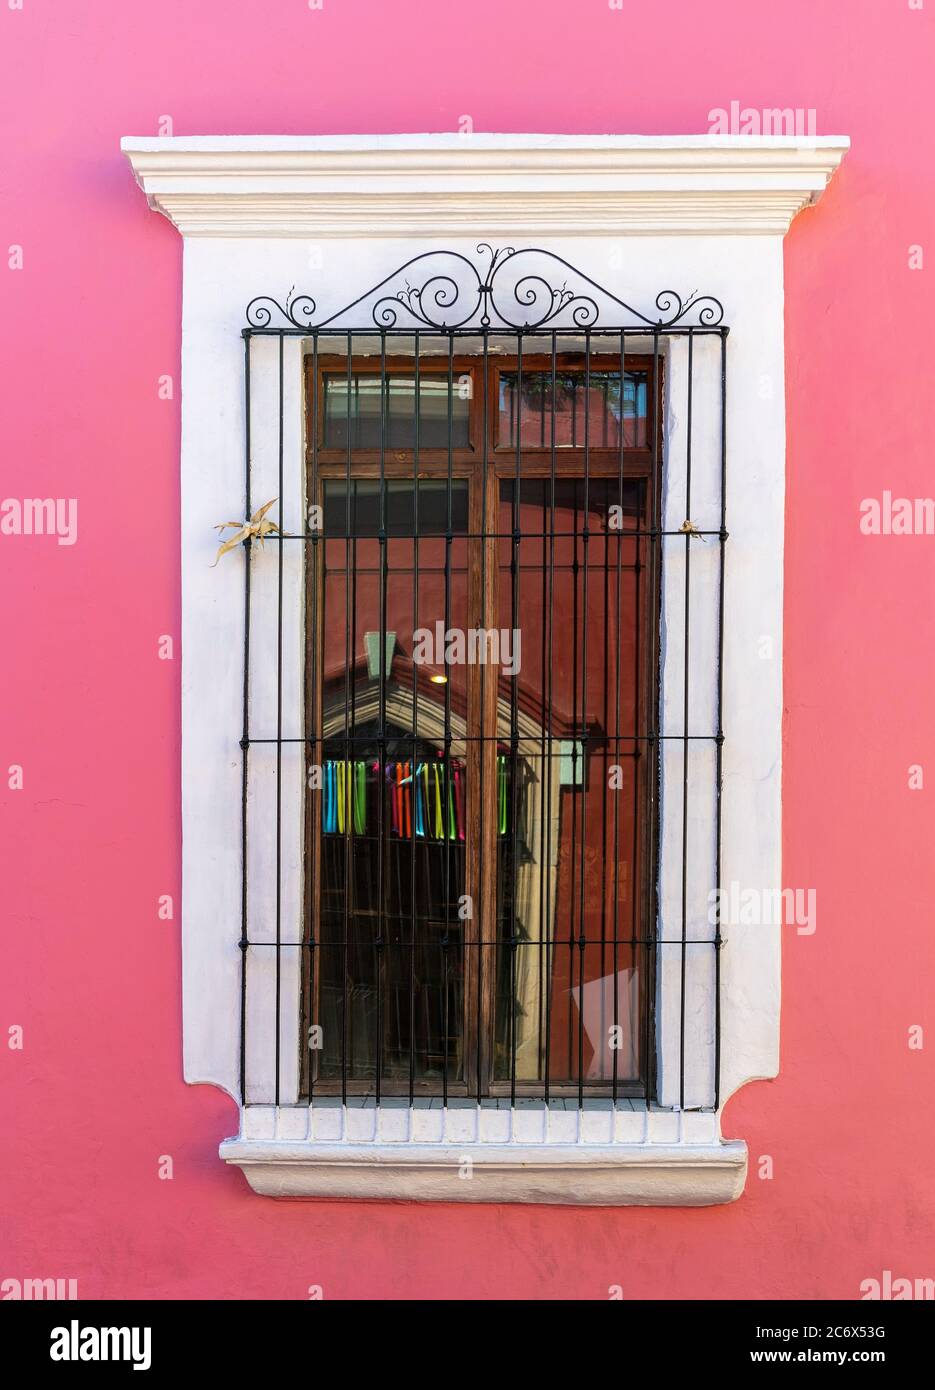 Architettura di stile coloniale con una parete rosa e decorazioni in ferro battuto su finestre di legno, Oaxaca, Messico. Foto Stock